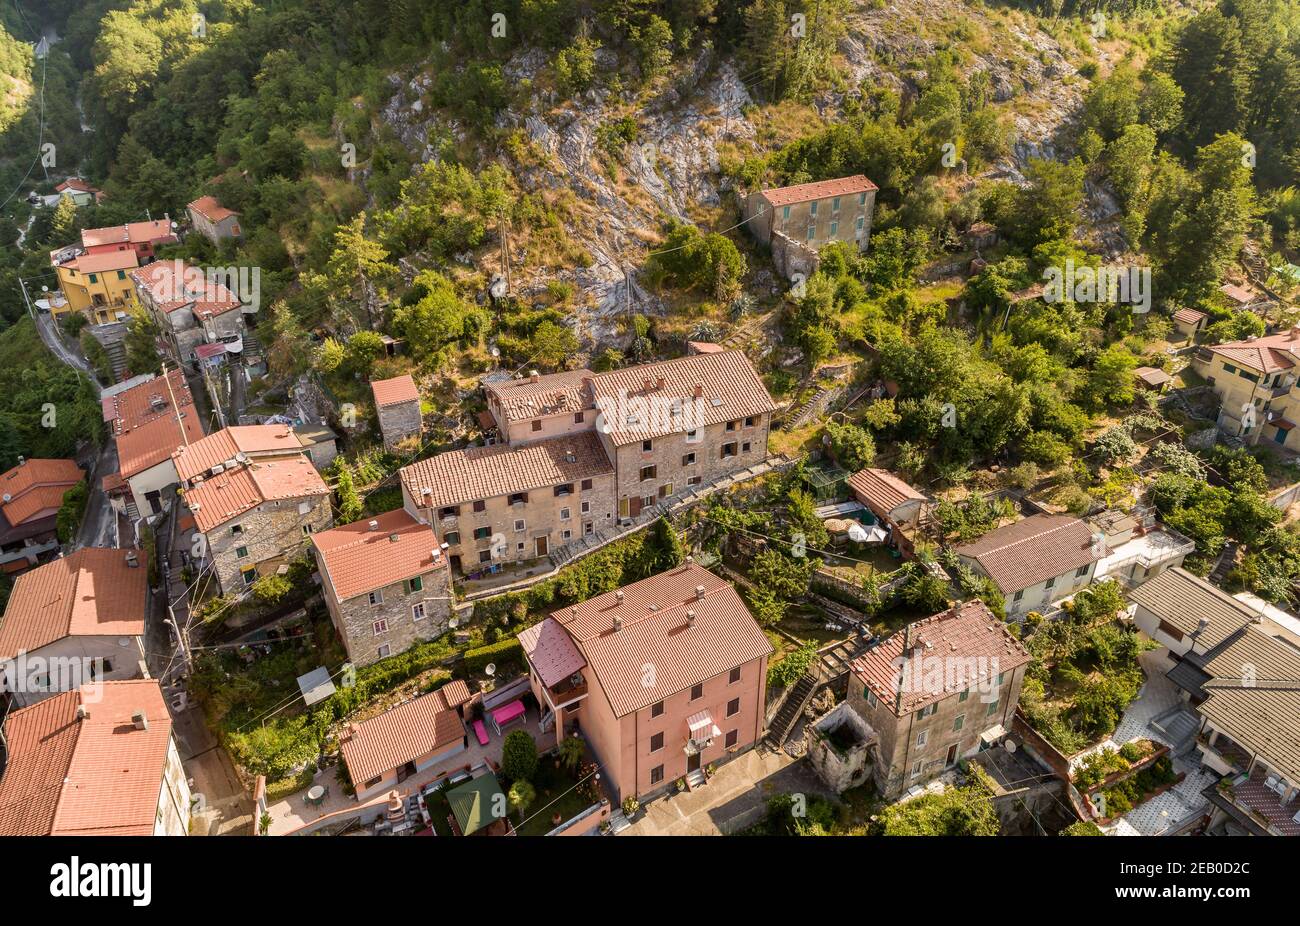 Veduta aerea dell'antico borgo Colonnata situato nelle Alpi Apuane, provincia di massa-Carrara, Toscana, Italia Foto Stock